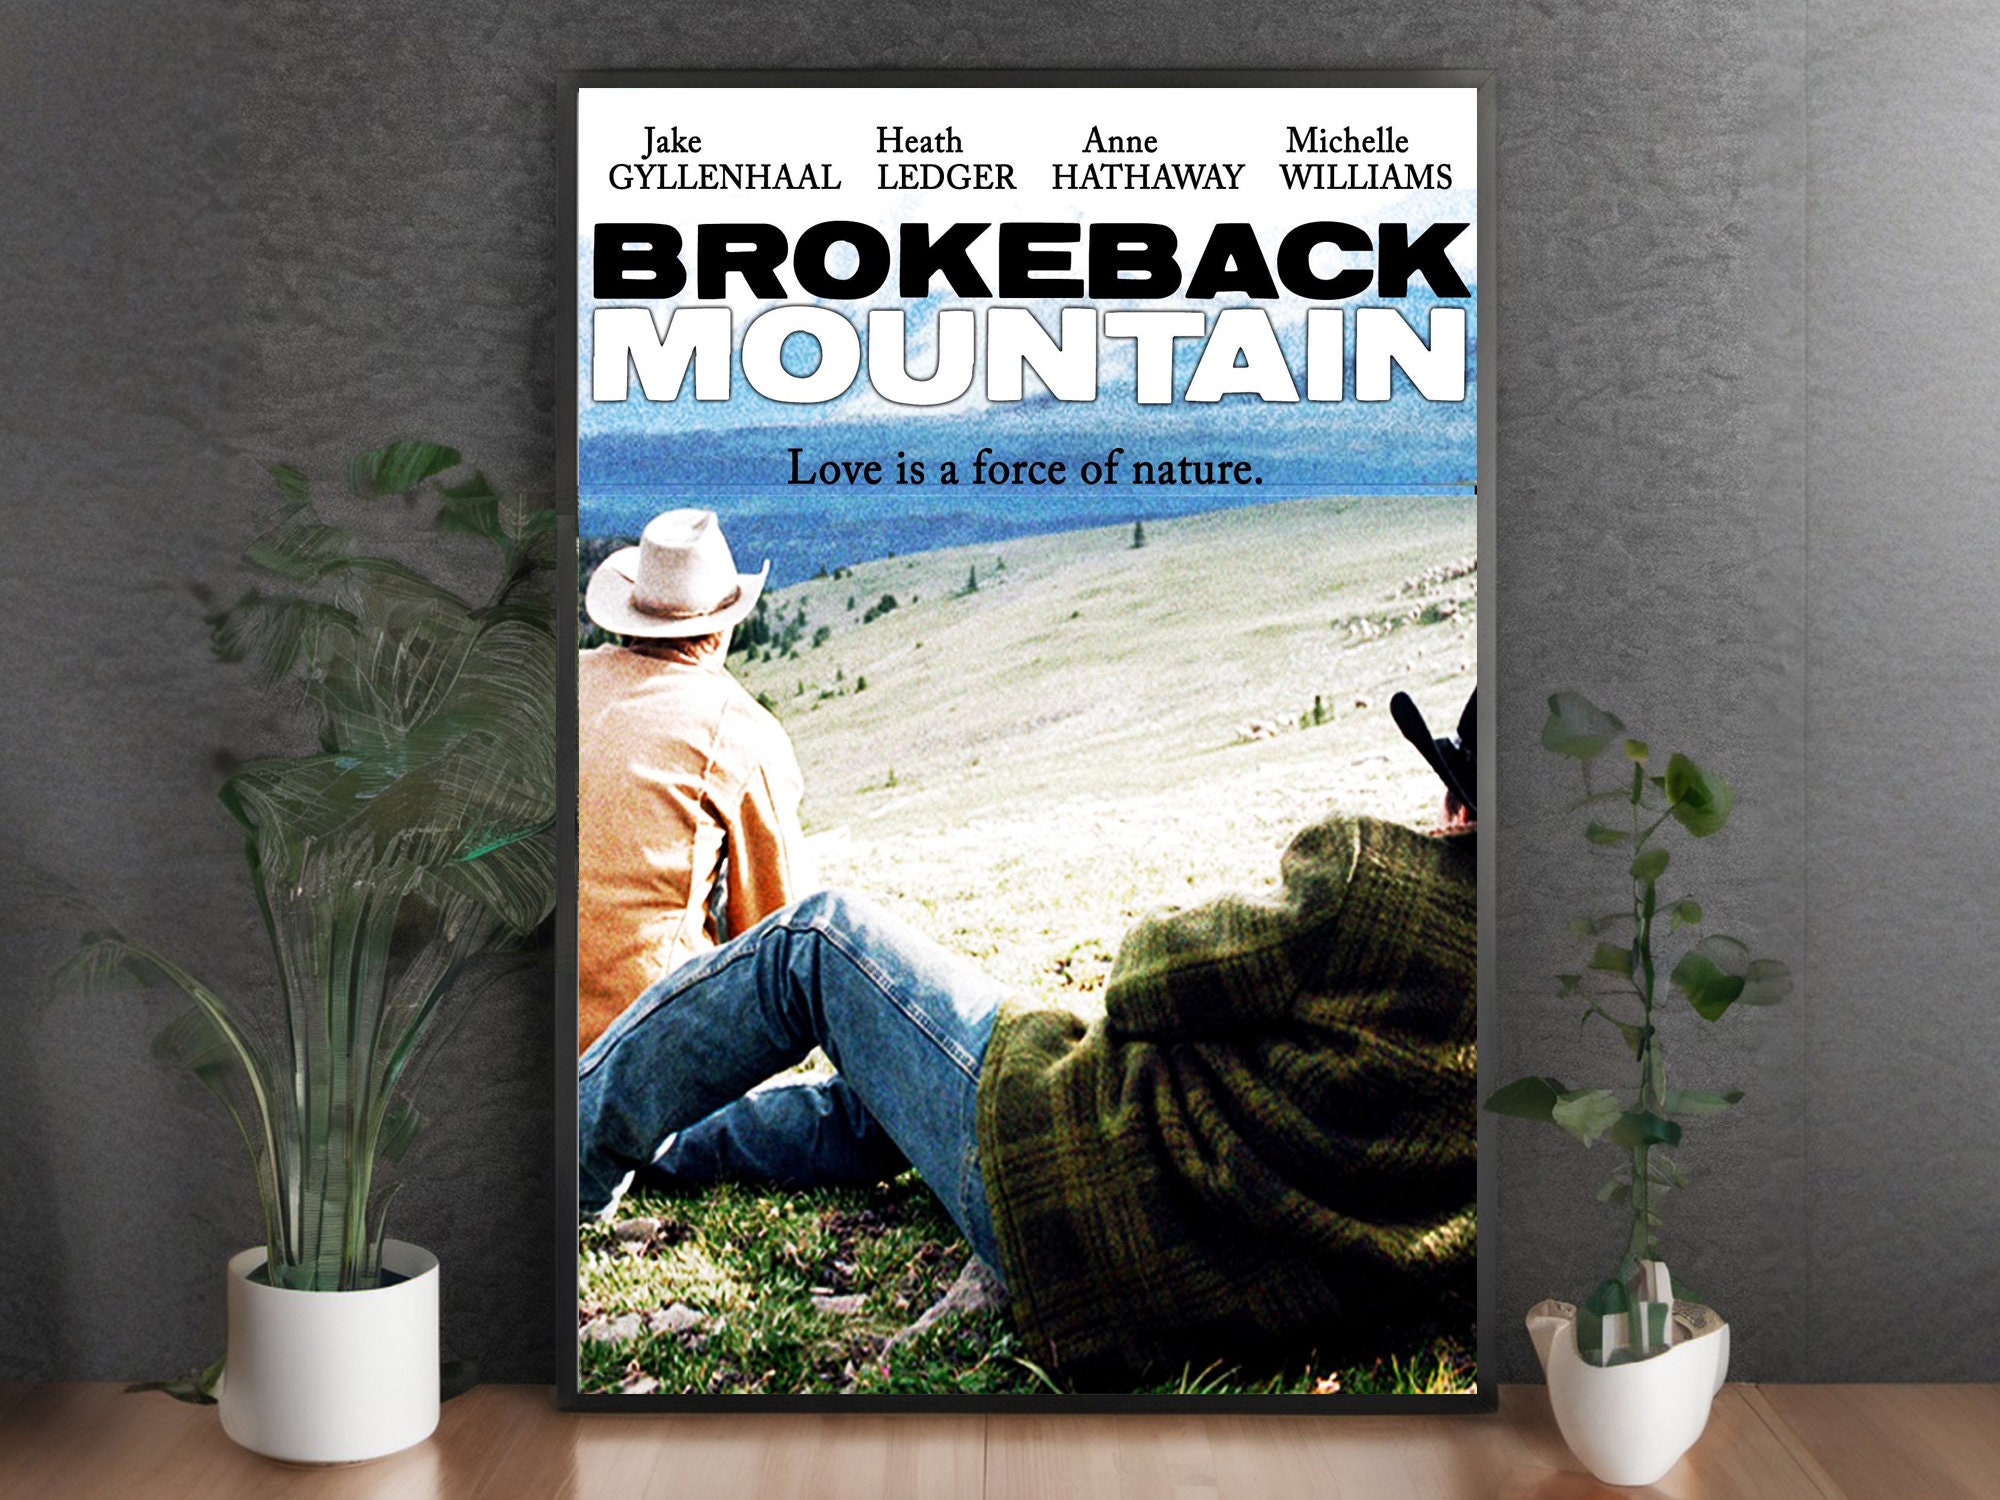 Brokeback Mountain Movie posters